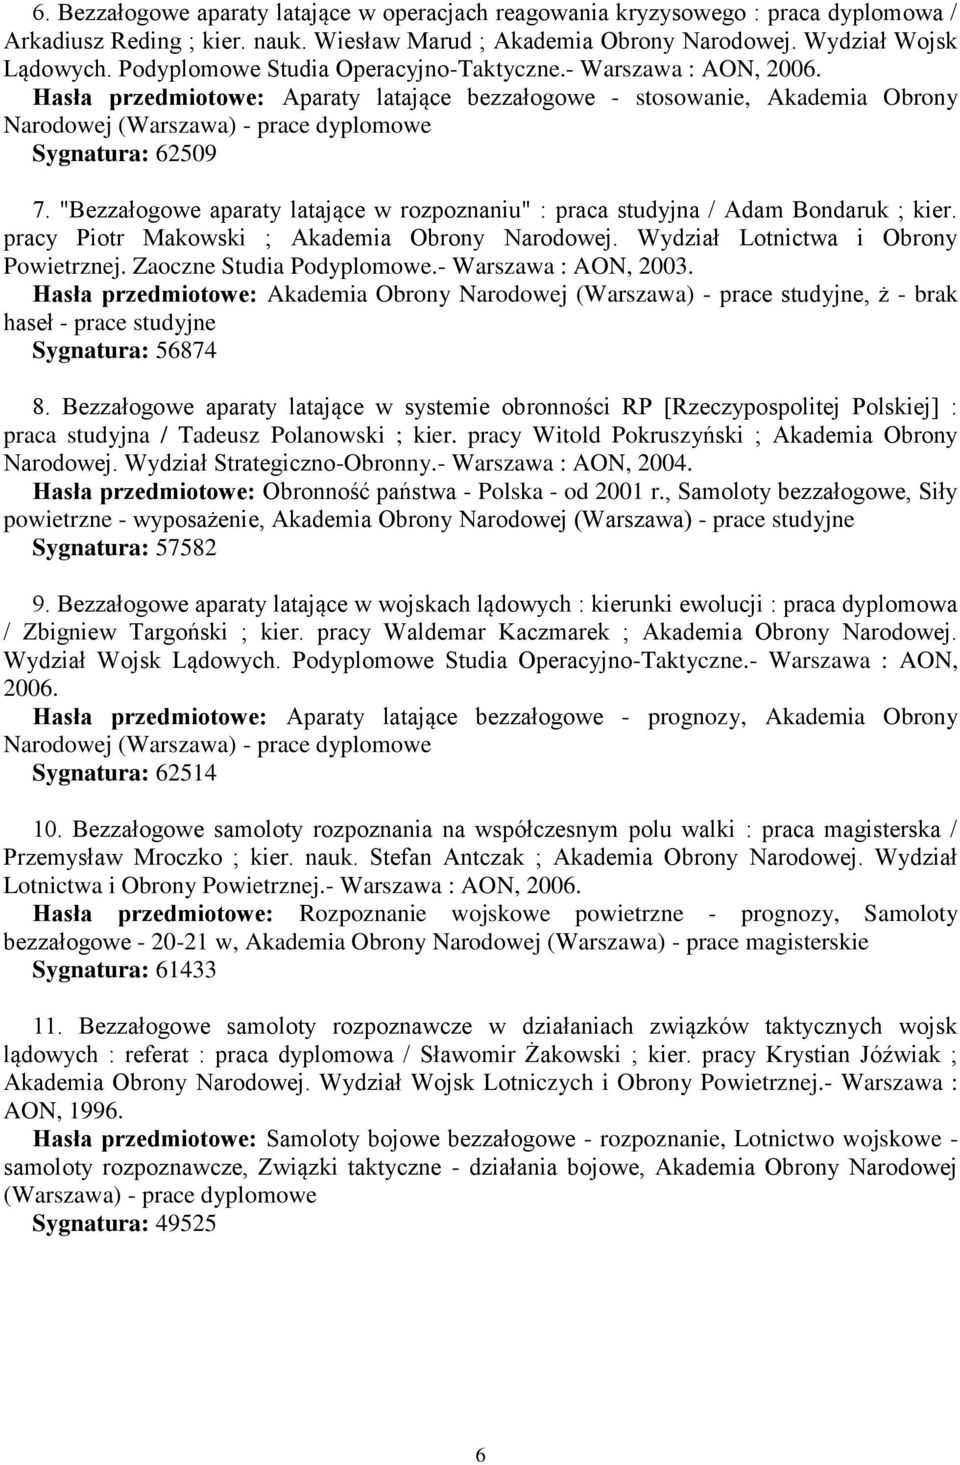 Hasła przedmiotowe: Aparaty latające bezzałogowe - stosowanie, Akademia Obrony Narodowej (Warszawa) - prace dyplomowe Sygnatura: 62509 7.